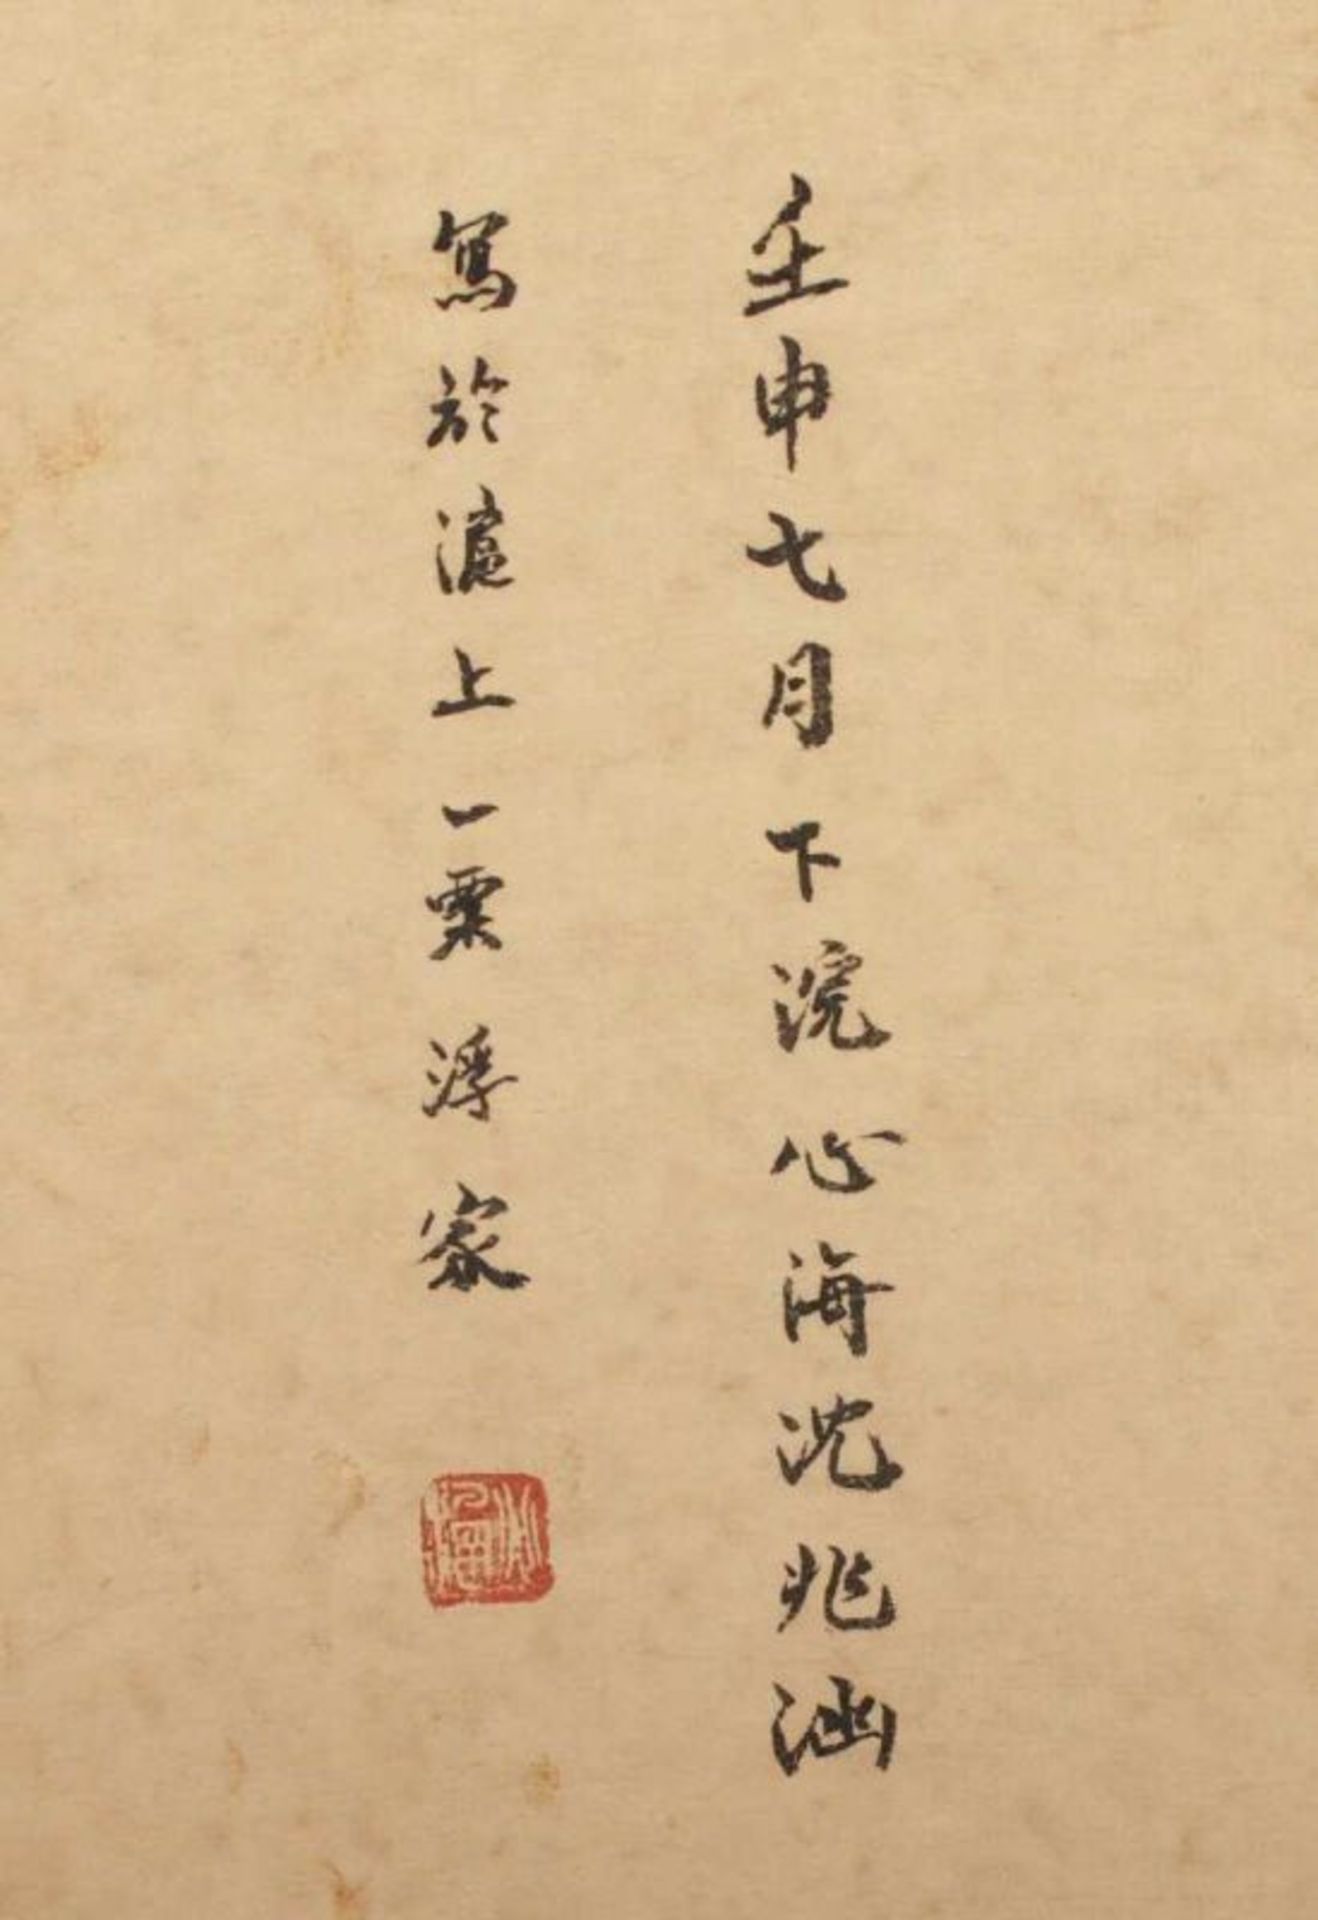 ROLLBILD, Tusche und Farben auf Papier, zwei Gottheiten, in der Art von SHEN ZHAOHAN (1855-1941), - Bild 3 aus 4